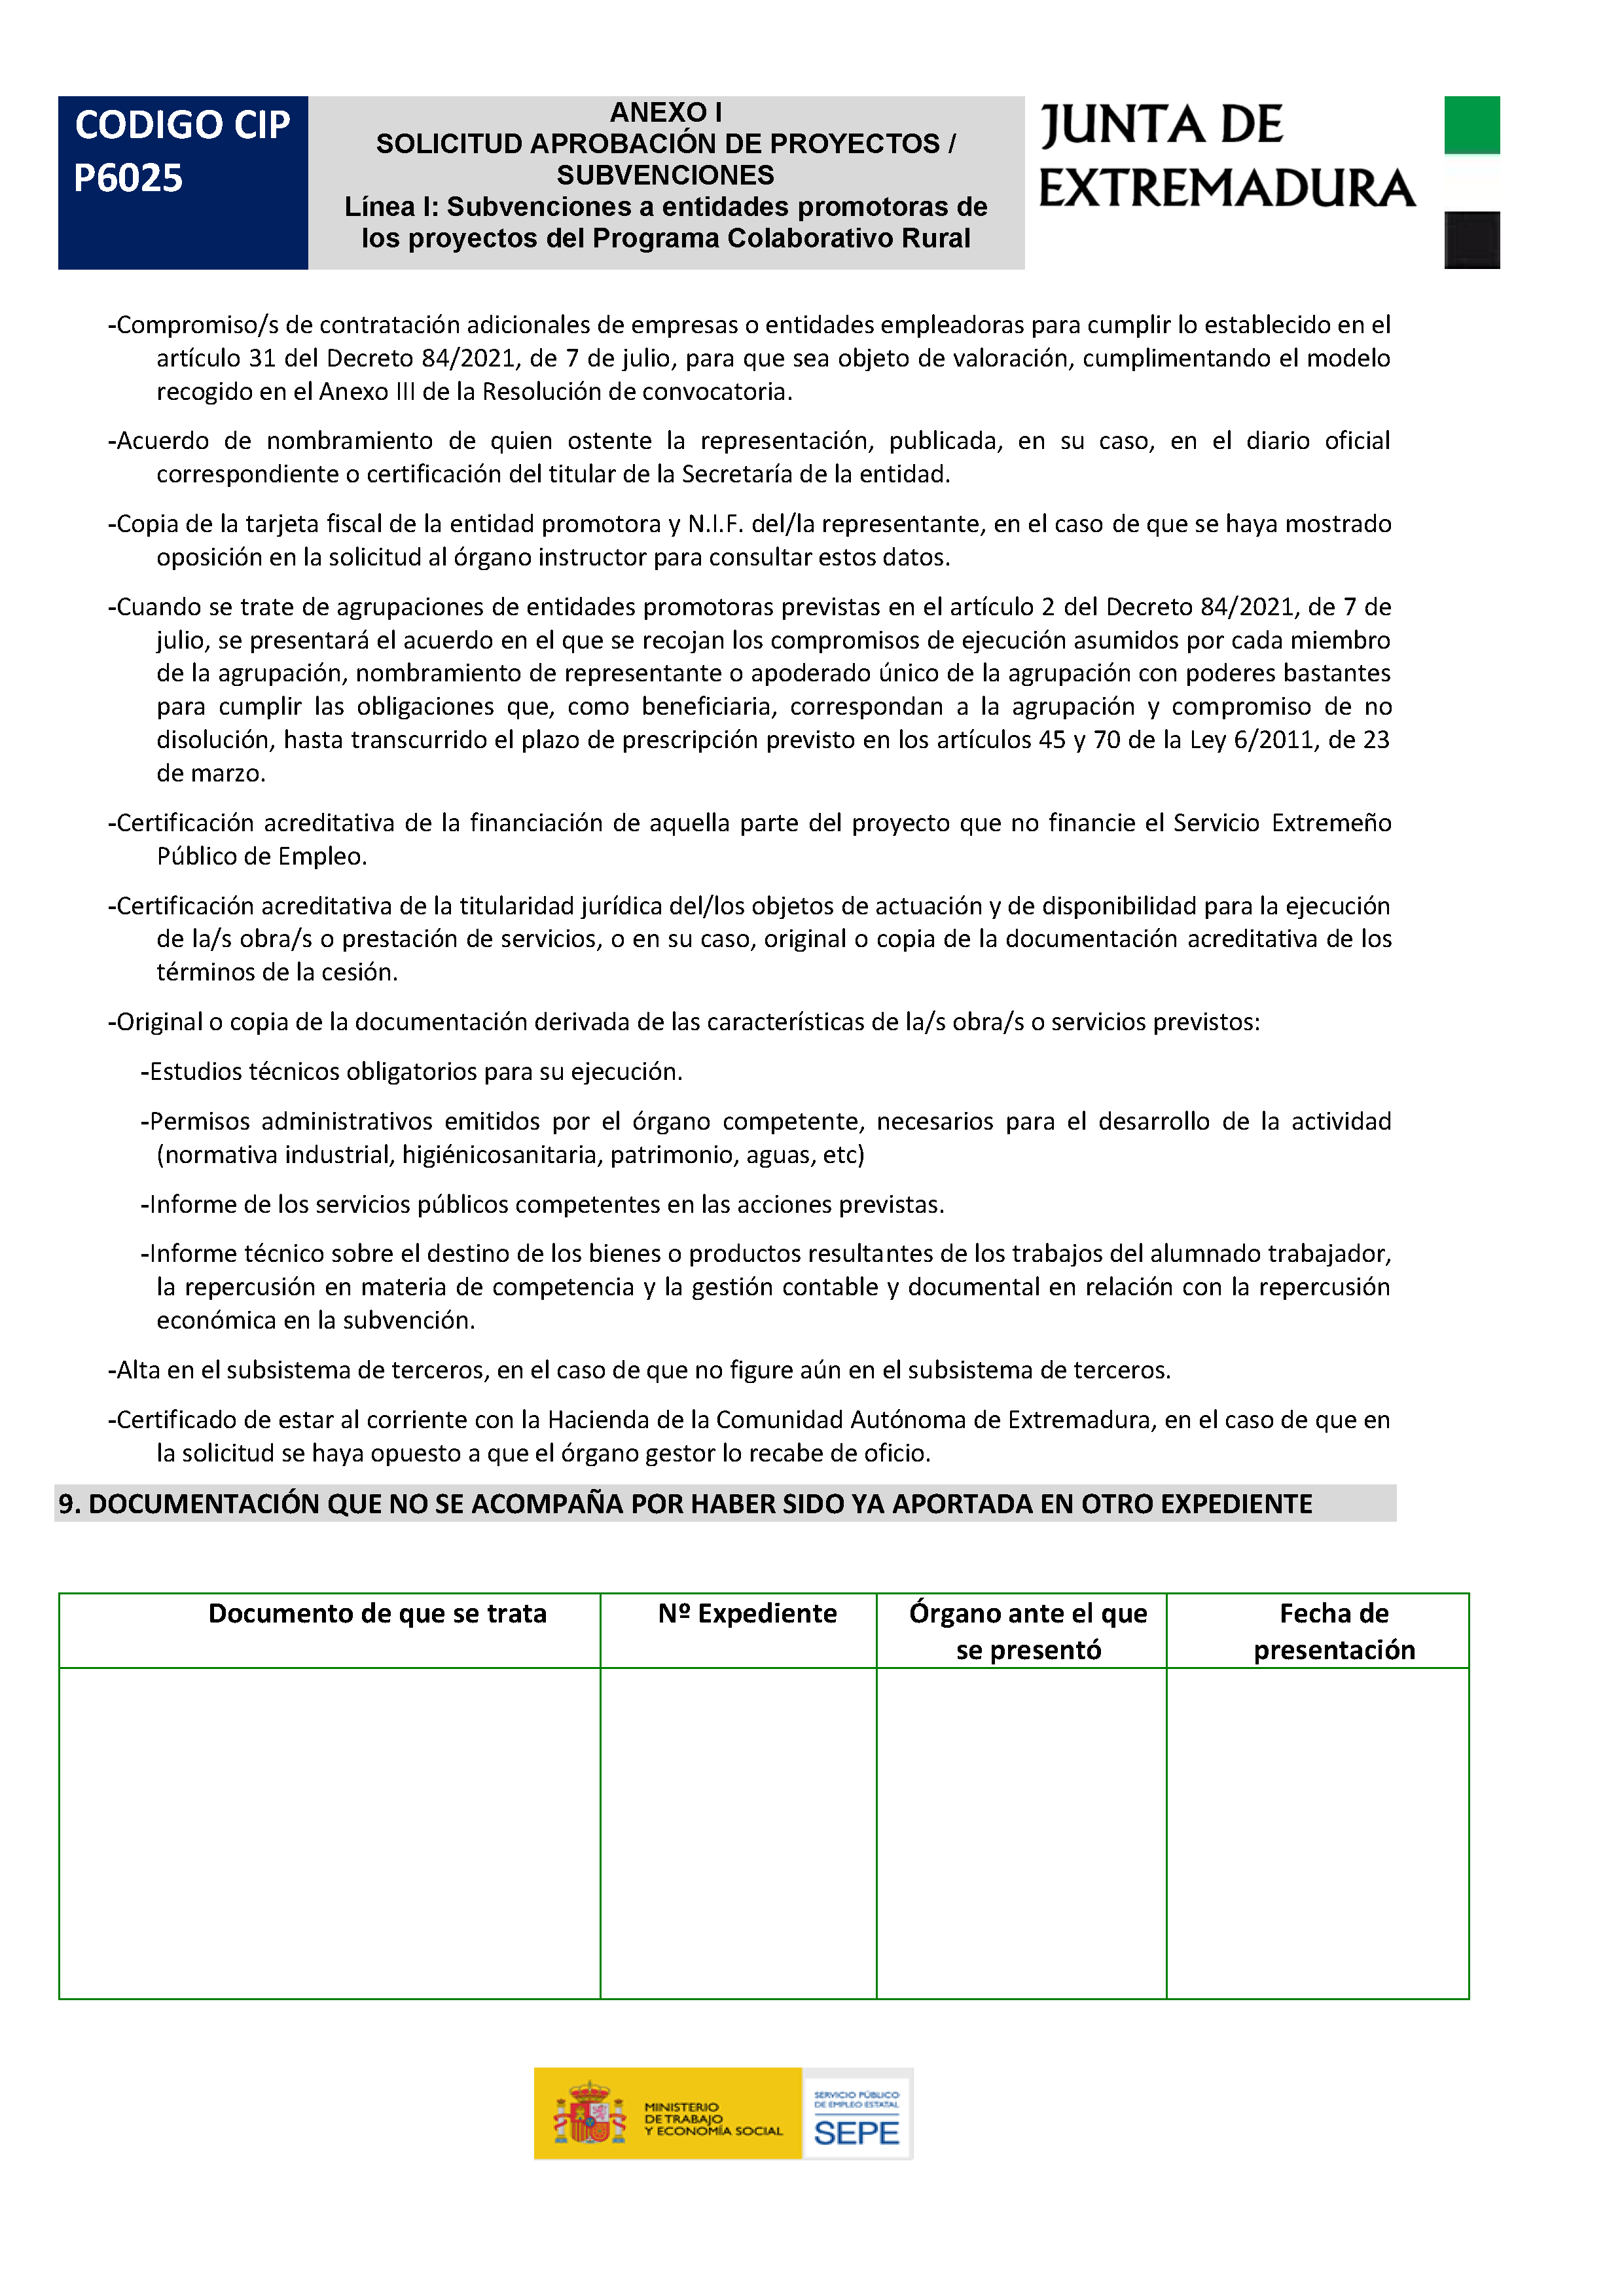 ANEXO I. SOLICITUD APROBACION DE PROYECTOS / SUBVENCIONES Pag 4